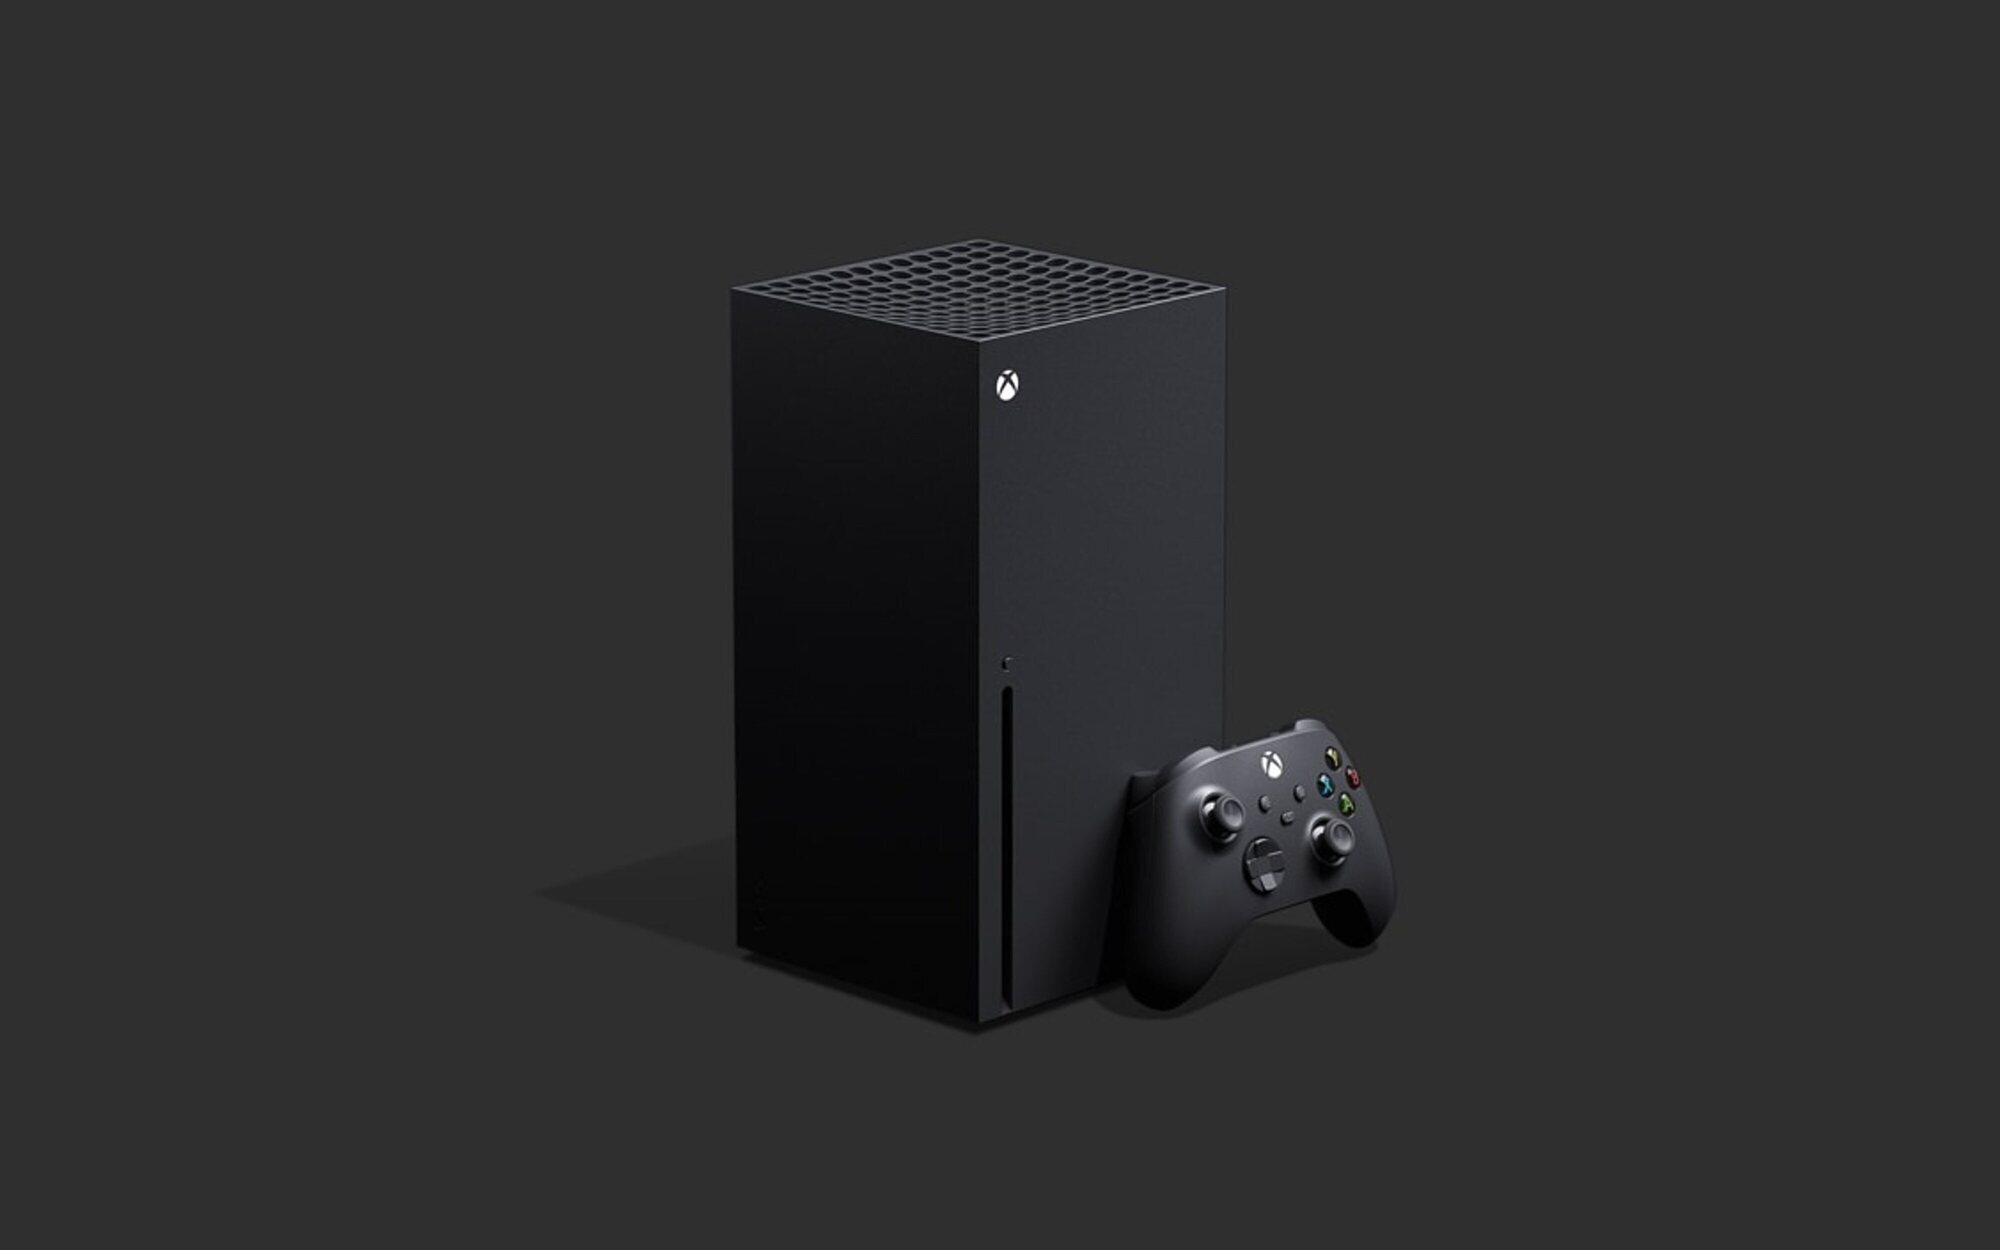 Descubren un nuevo modelo de Xbox Series X en un anuncio de Logitech